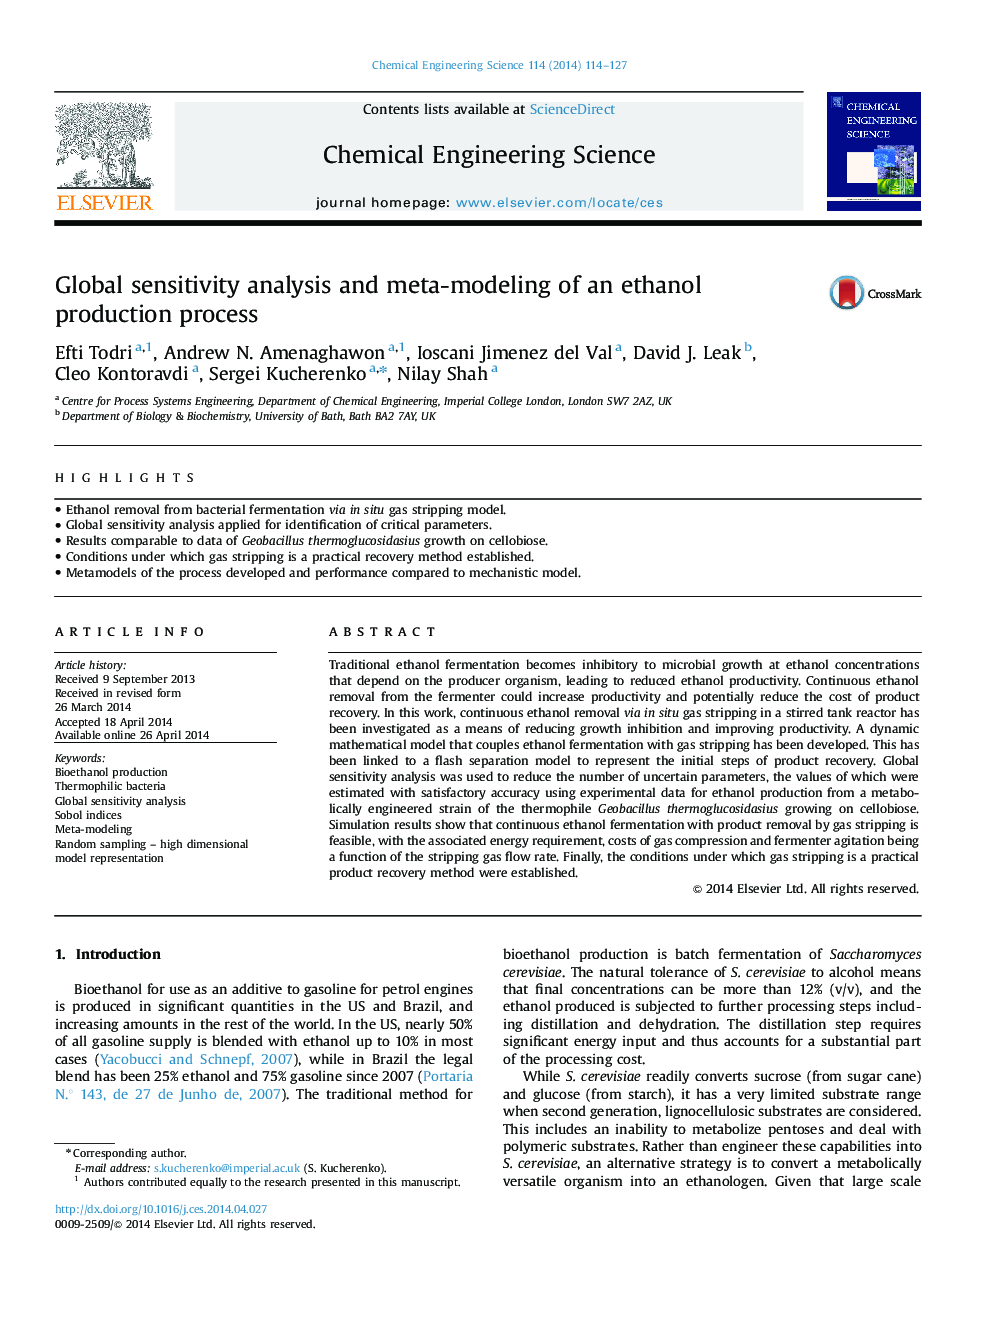 تجزیه و تحلیل حساسیت جهانی و مدل سازی فرایند تولید اتانول 